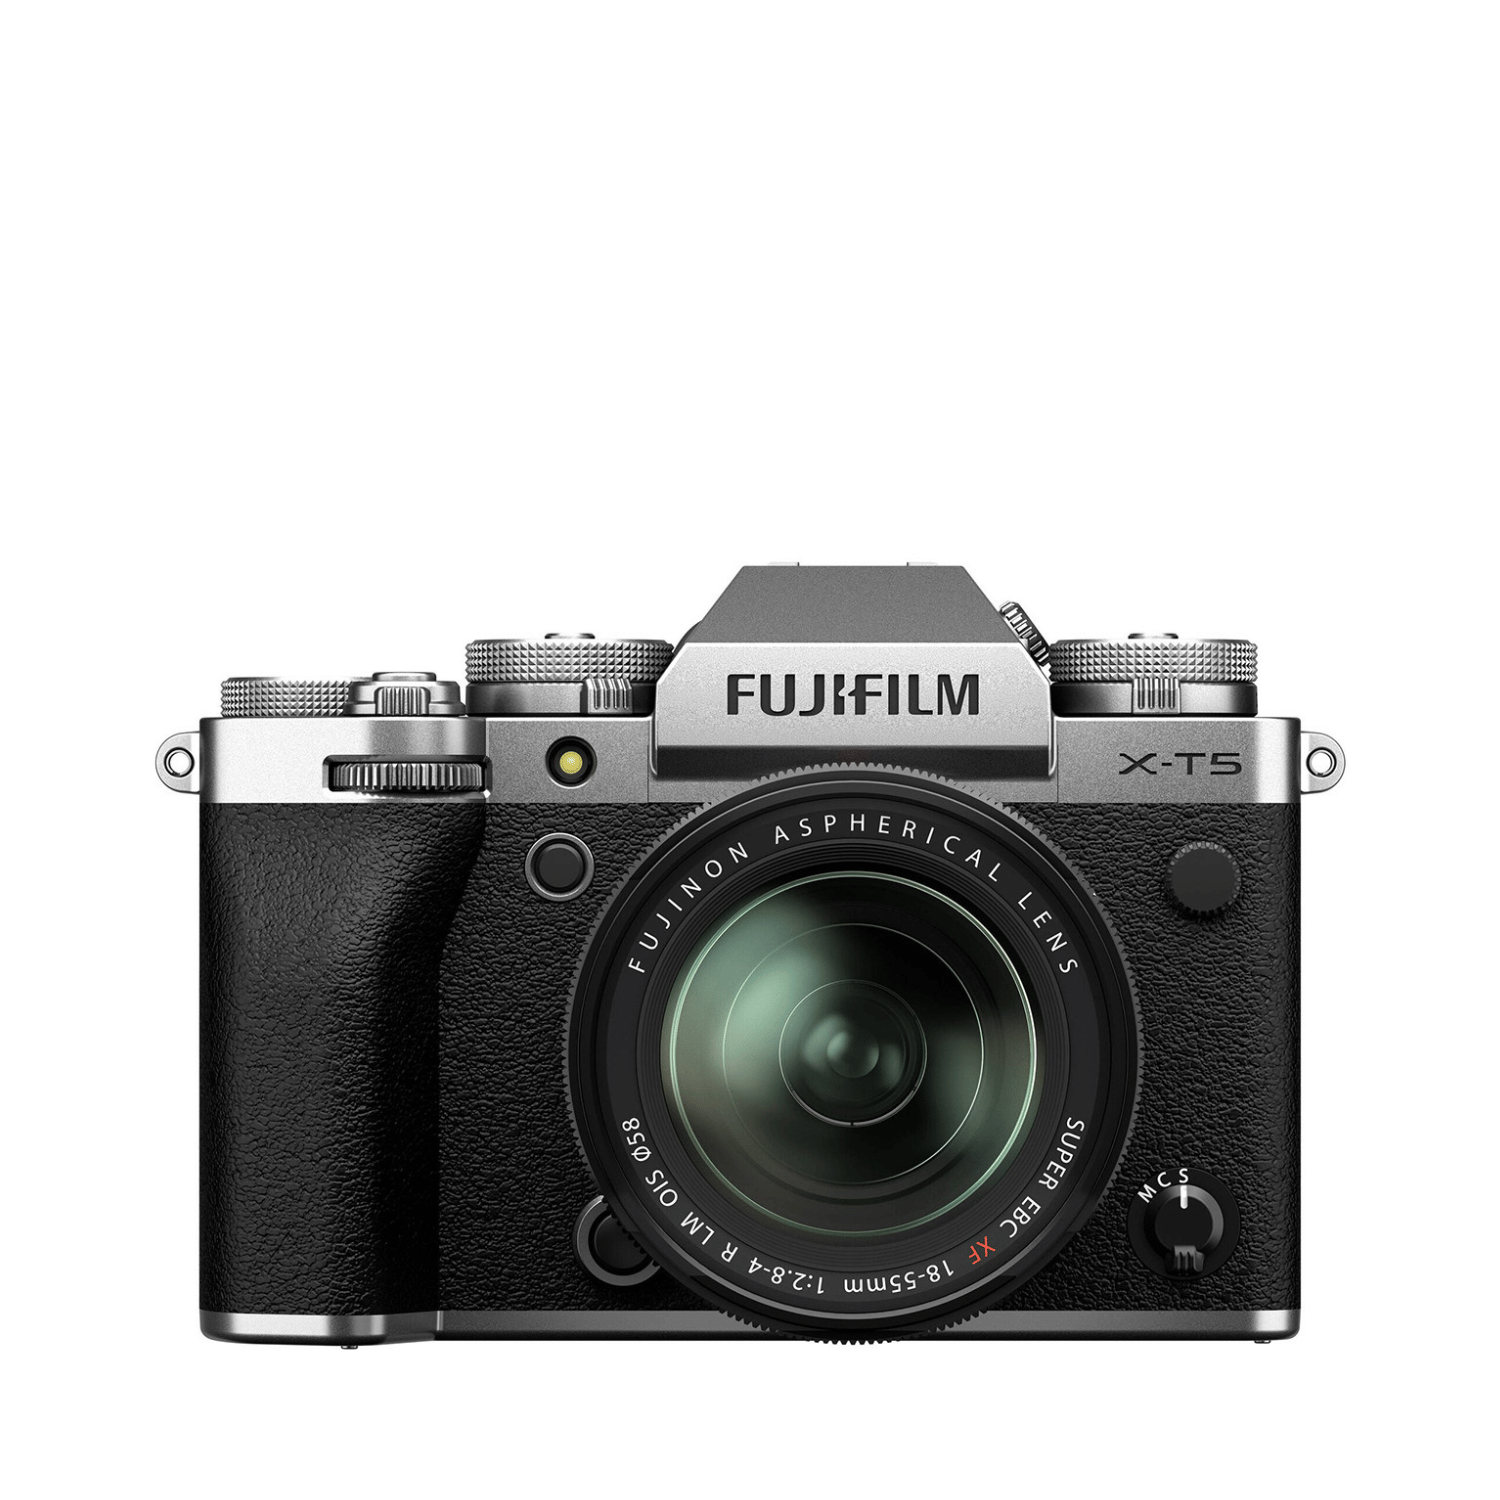 Fujifilm X-T5 + 18-55mm F2.8 R LM WR - Garanzia Fujifilm Italia - Cine Sud è da 47 anni sul mercato!